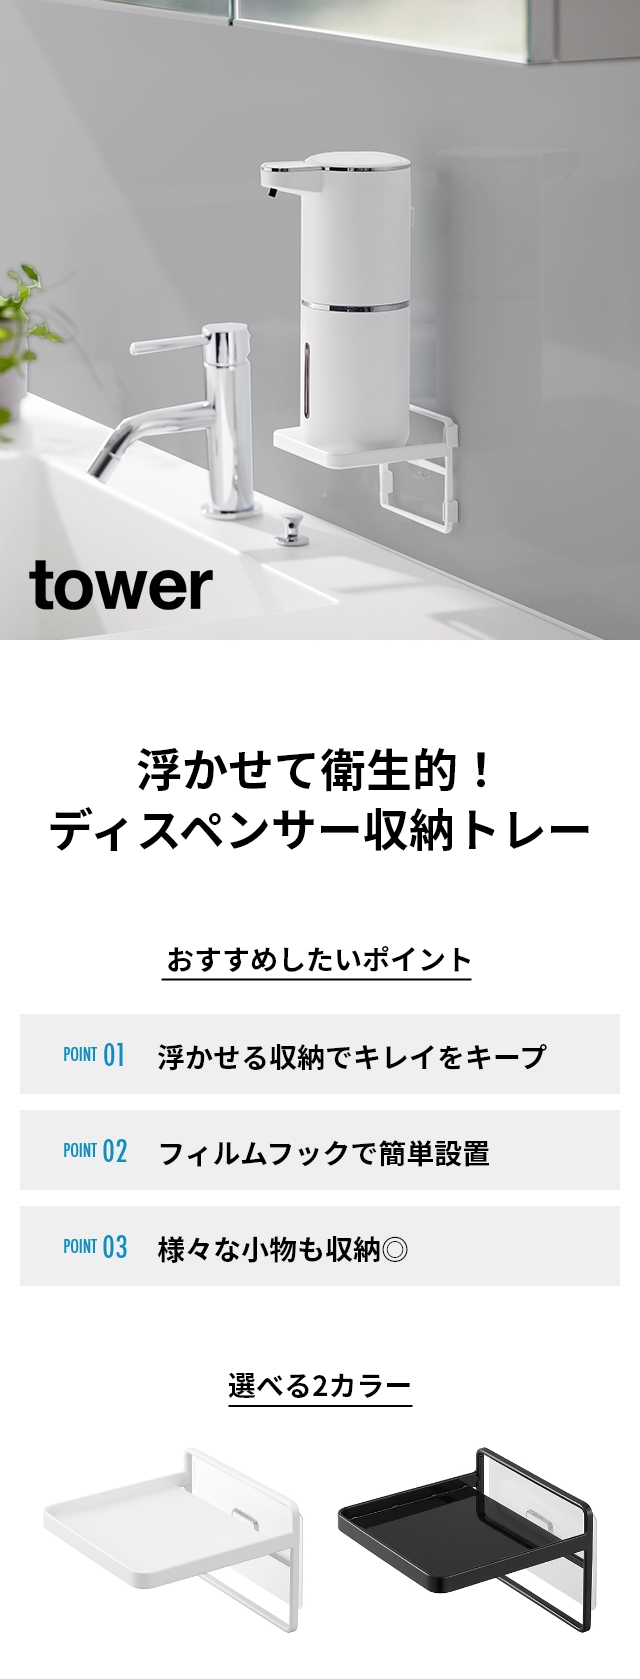 tower(タワー) フィルムフック ソープディスペンサー収納トレー